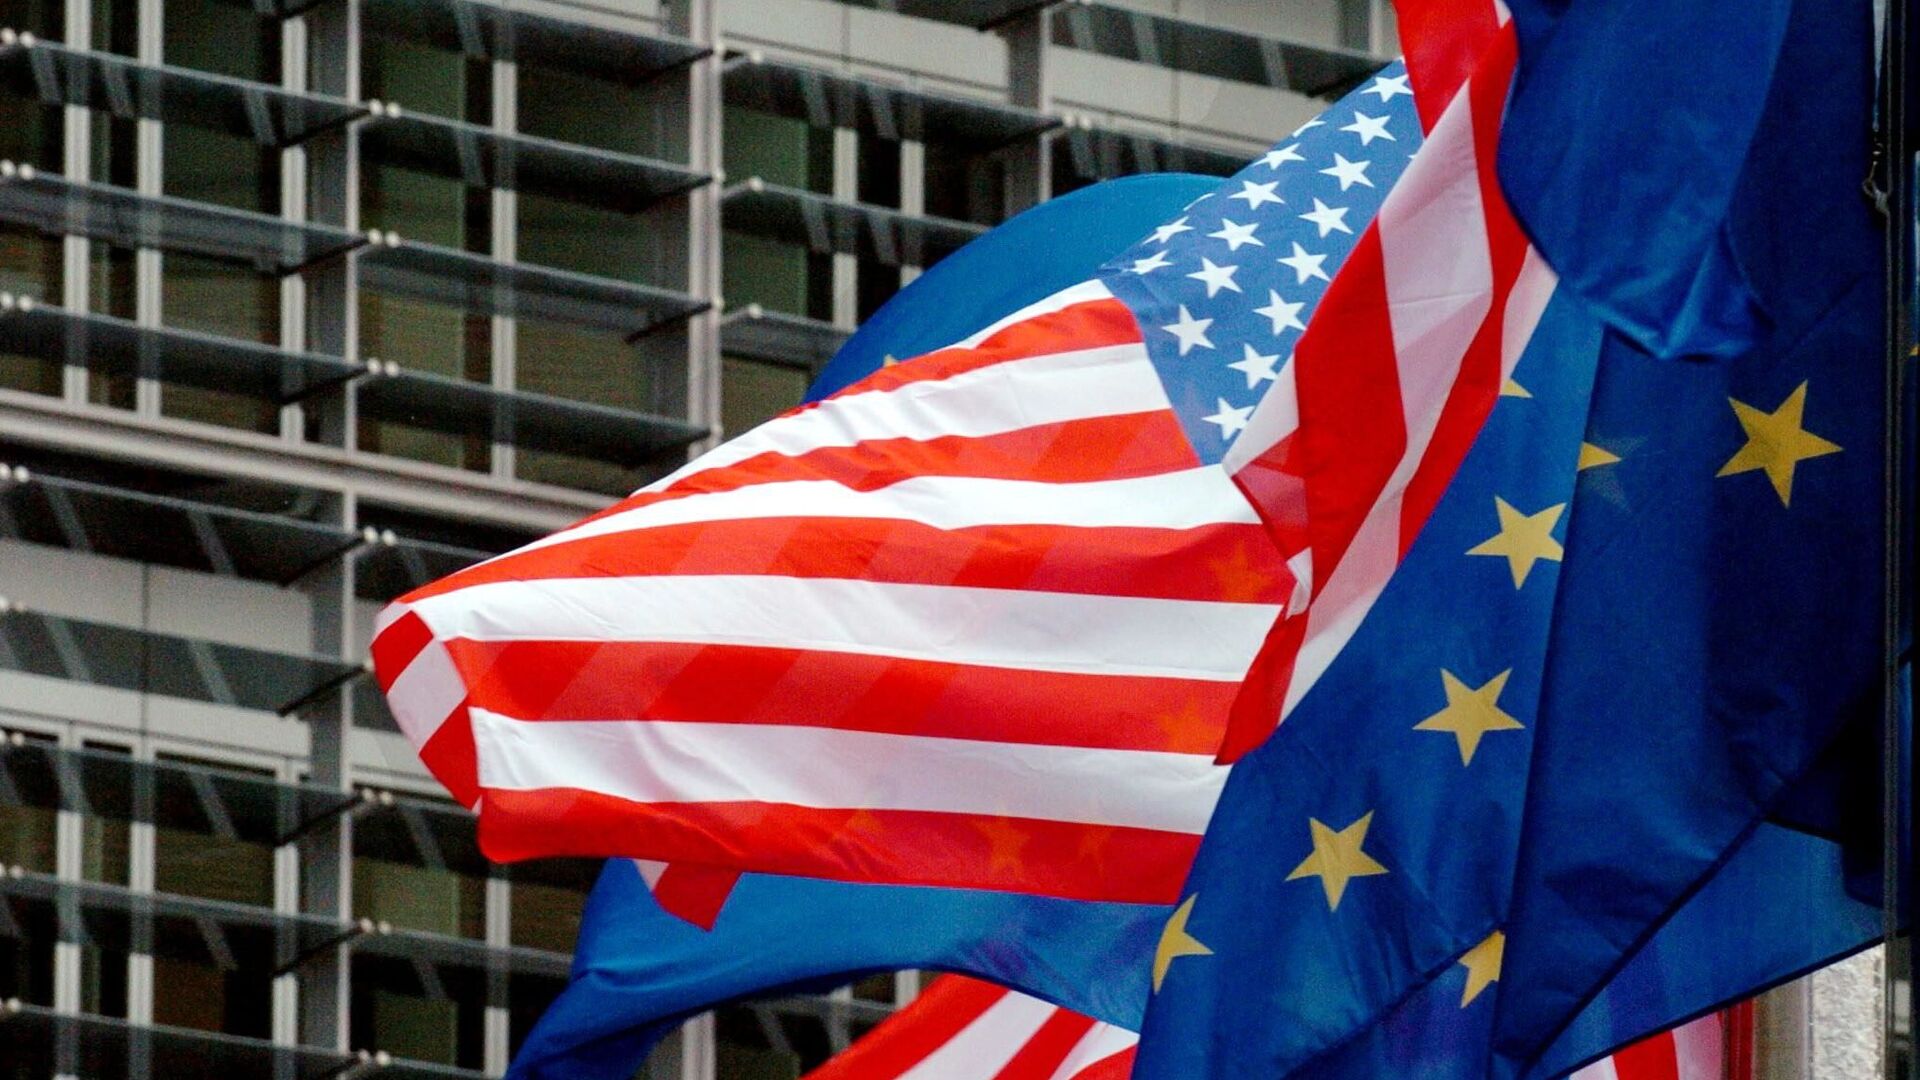 Jungtinių Valstijų ir Europos Sąjungos vėliavos priešais Europos Komisijos pastatą Briuselyje - Sputnik Lietuva, 1920, 11.07.2021